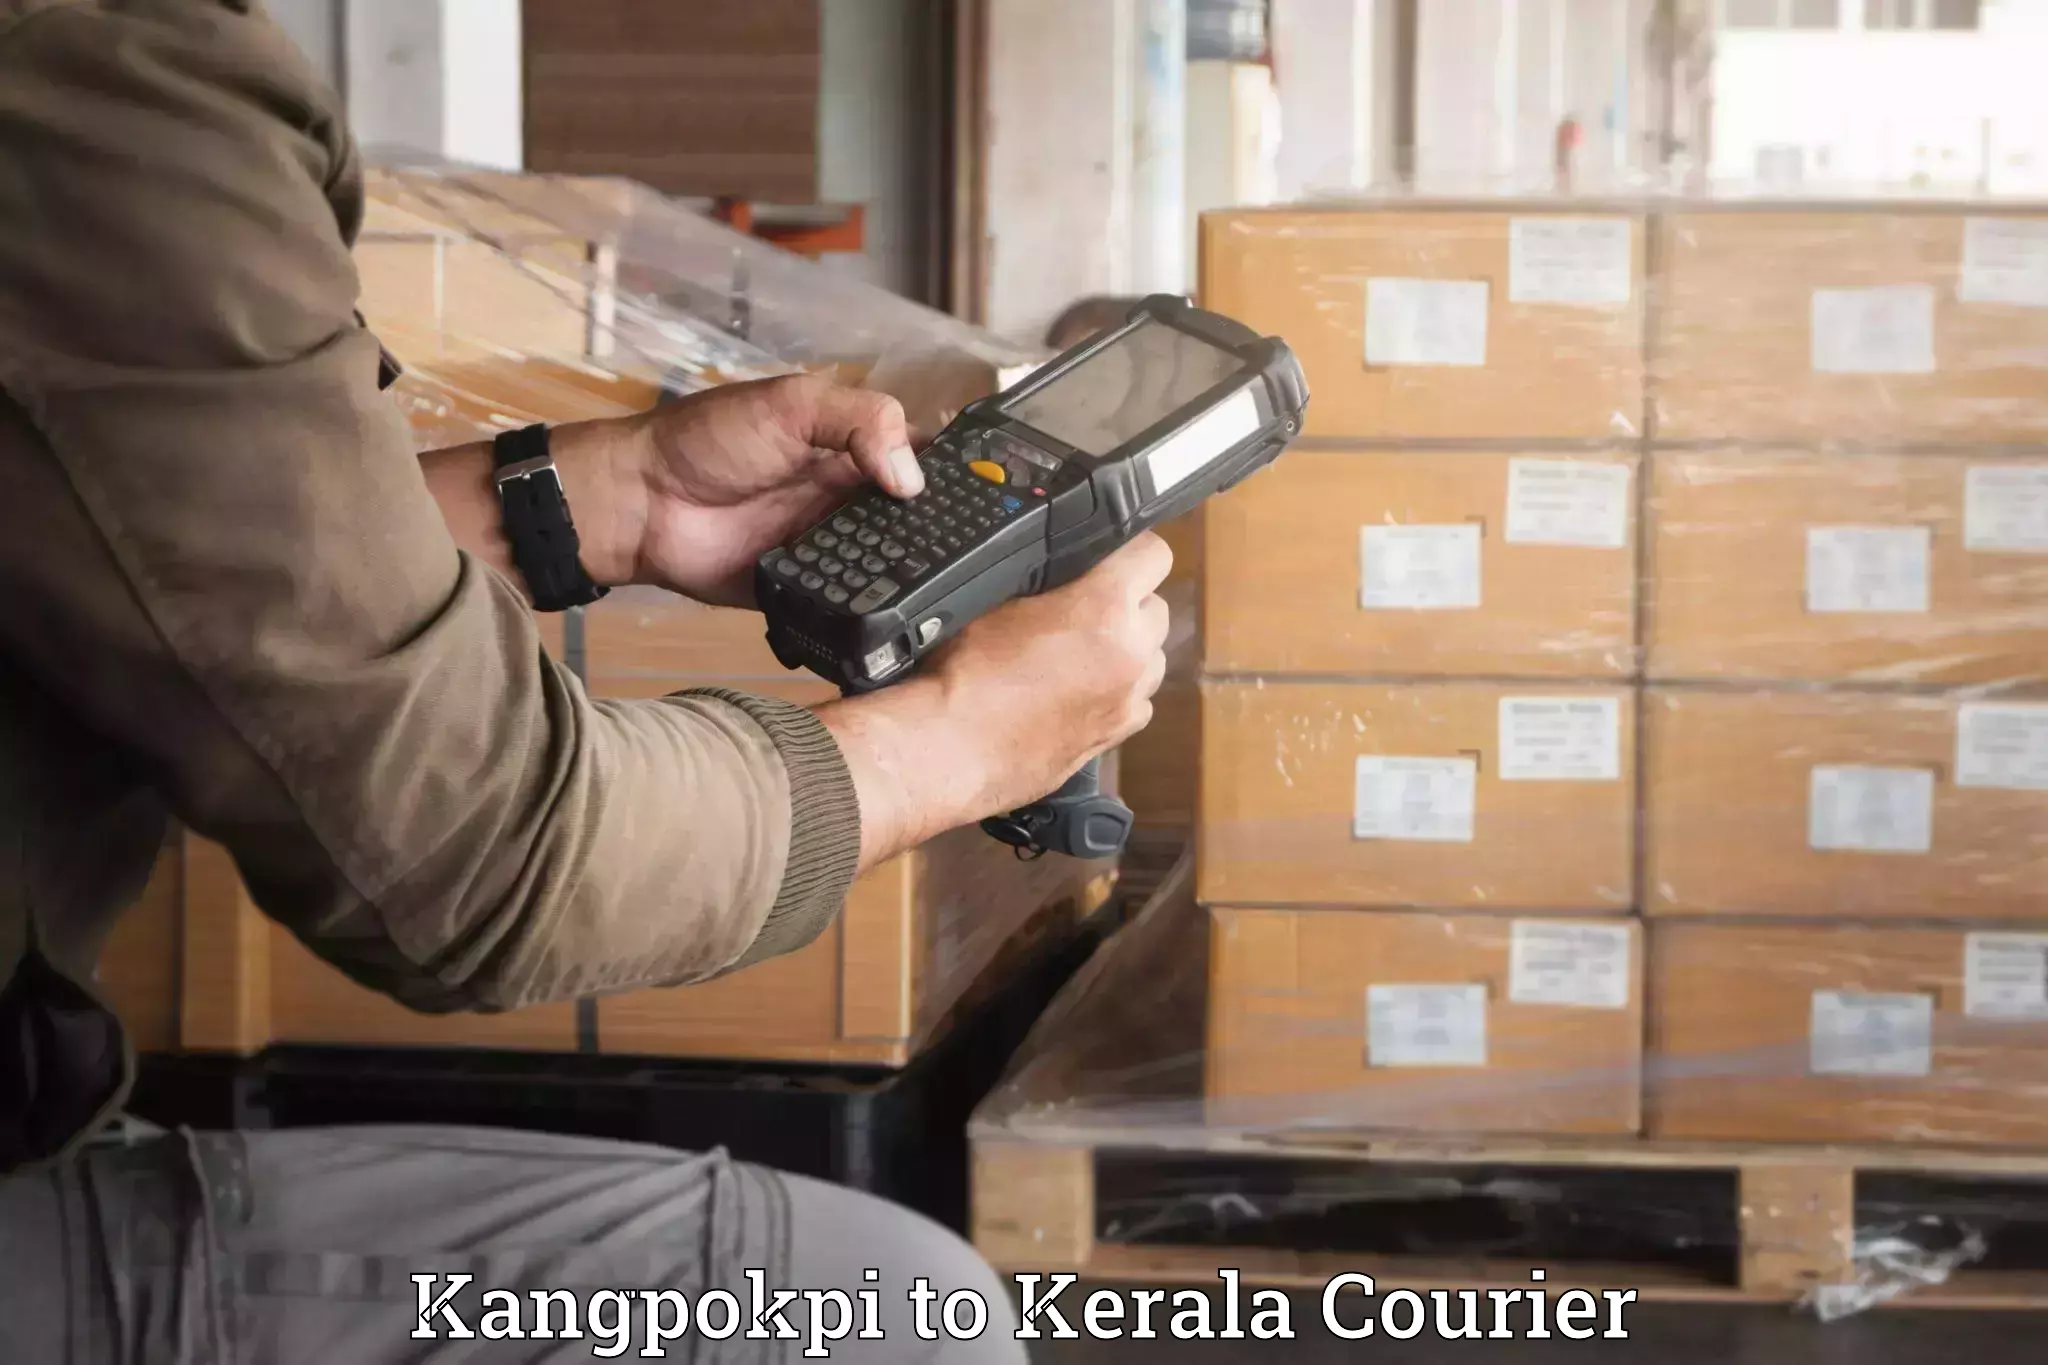 Luggage transit service Kangpokpi to Kerala